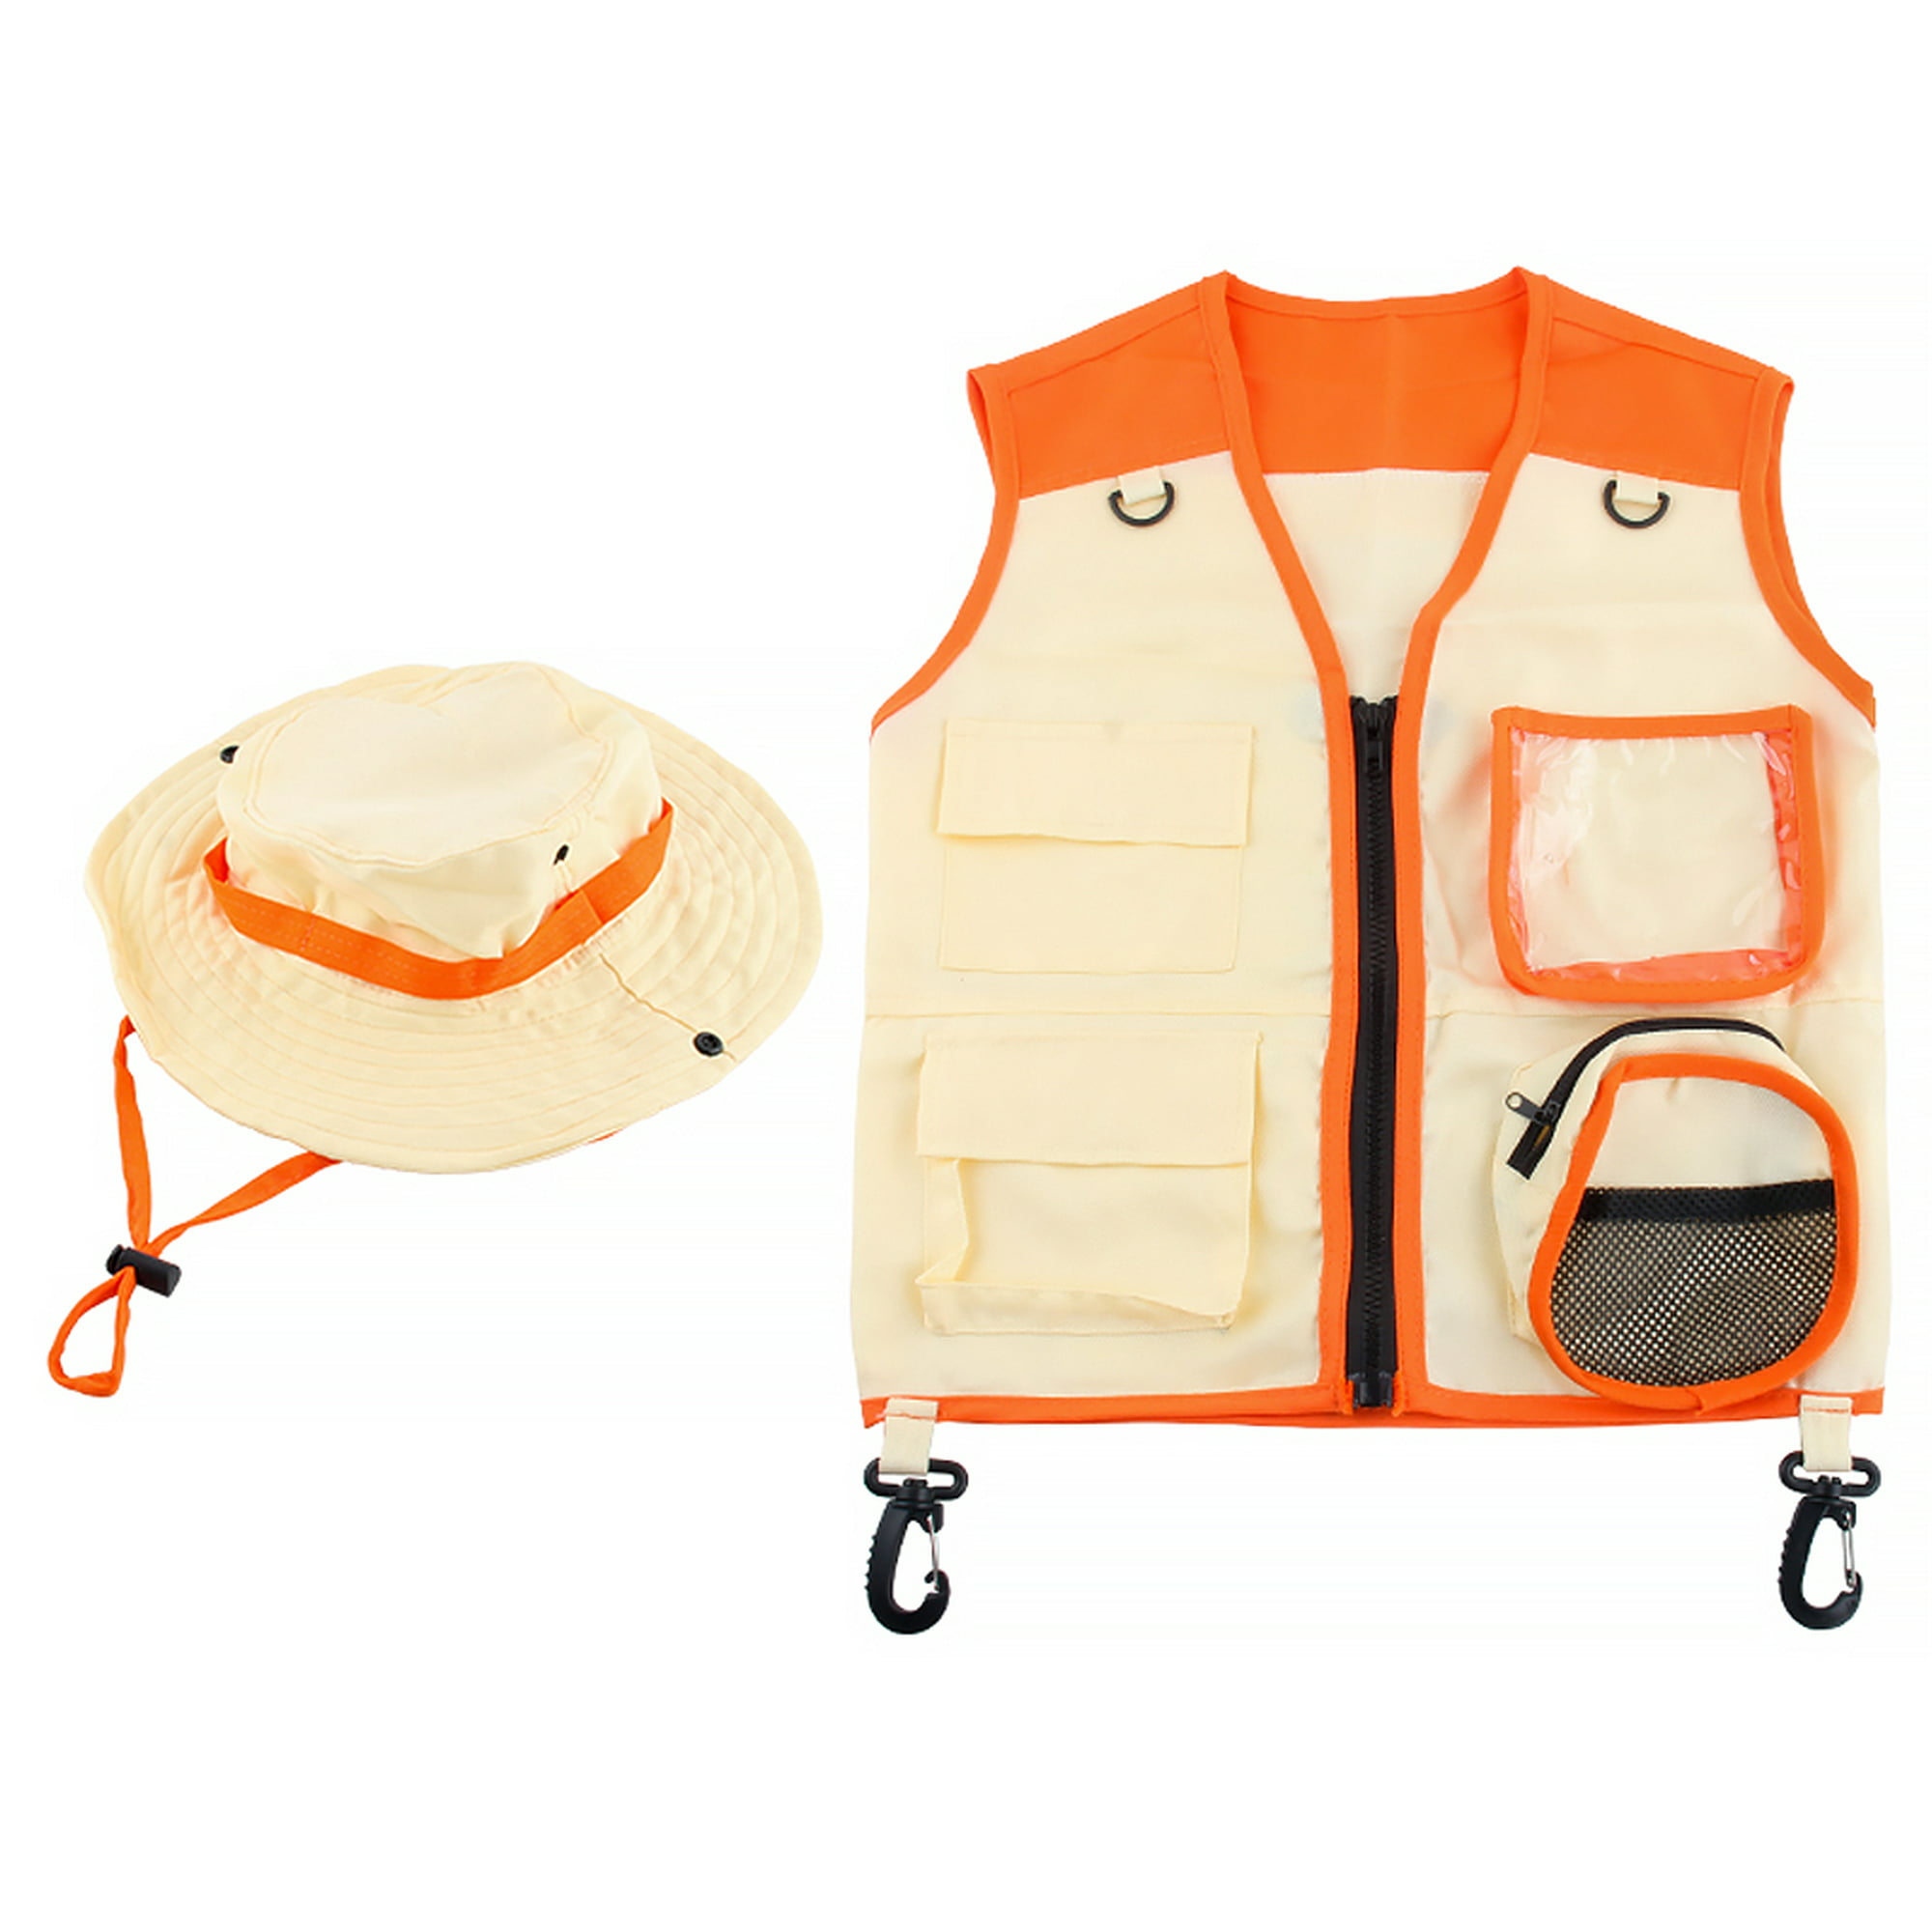  Kit de explorador para niños con chaleco y sombrero de safari,  equipo de campamento para niños, traje de safari, kit de atrapa insectos  para niños y más - Kit de explorador